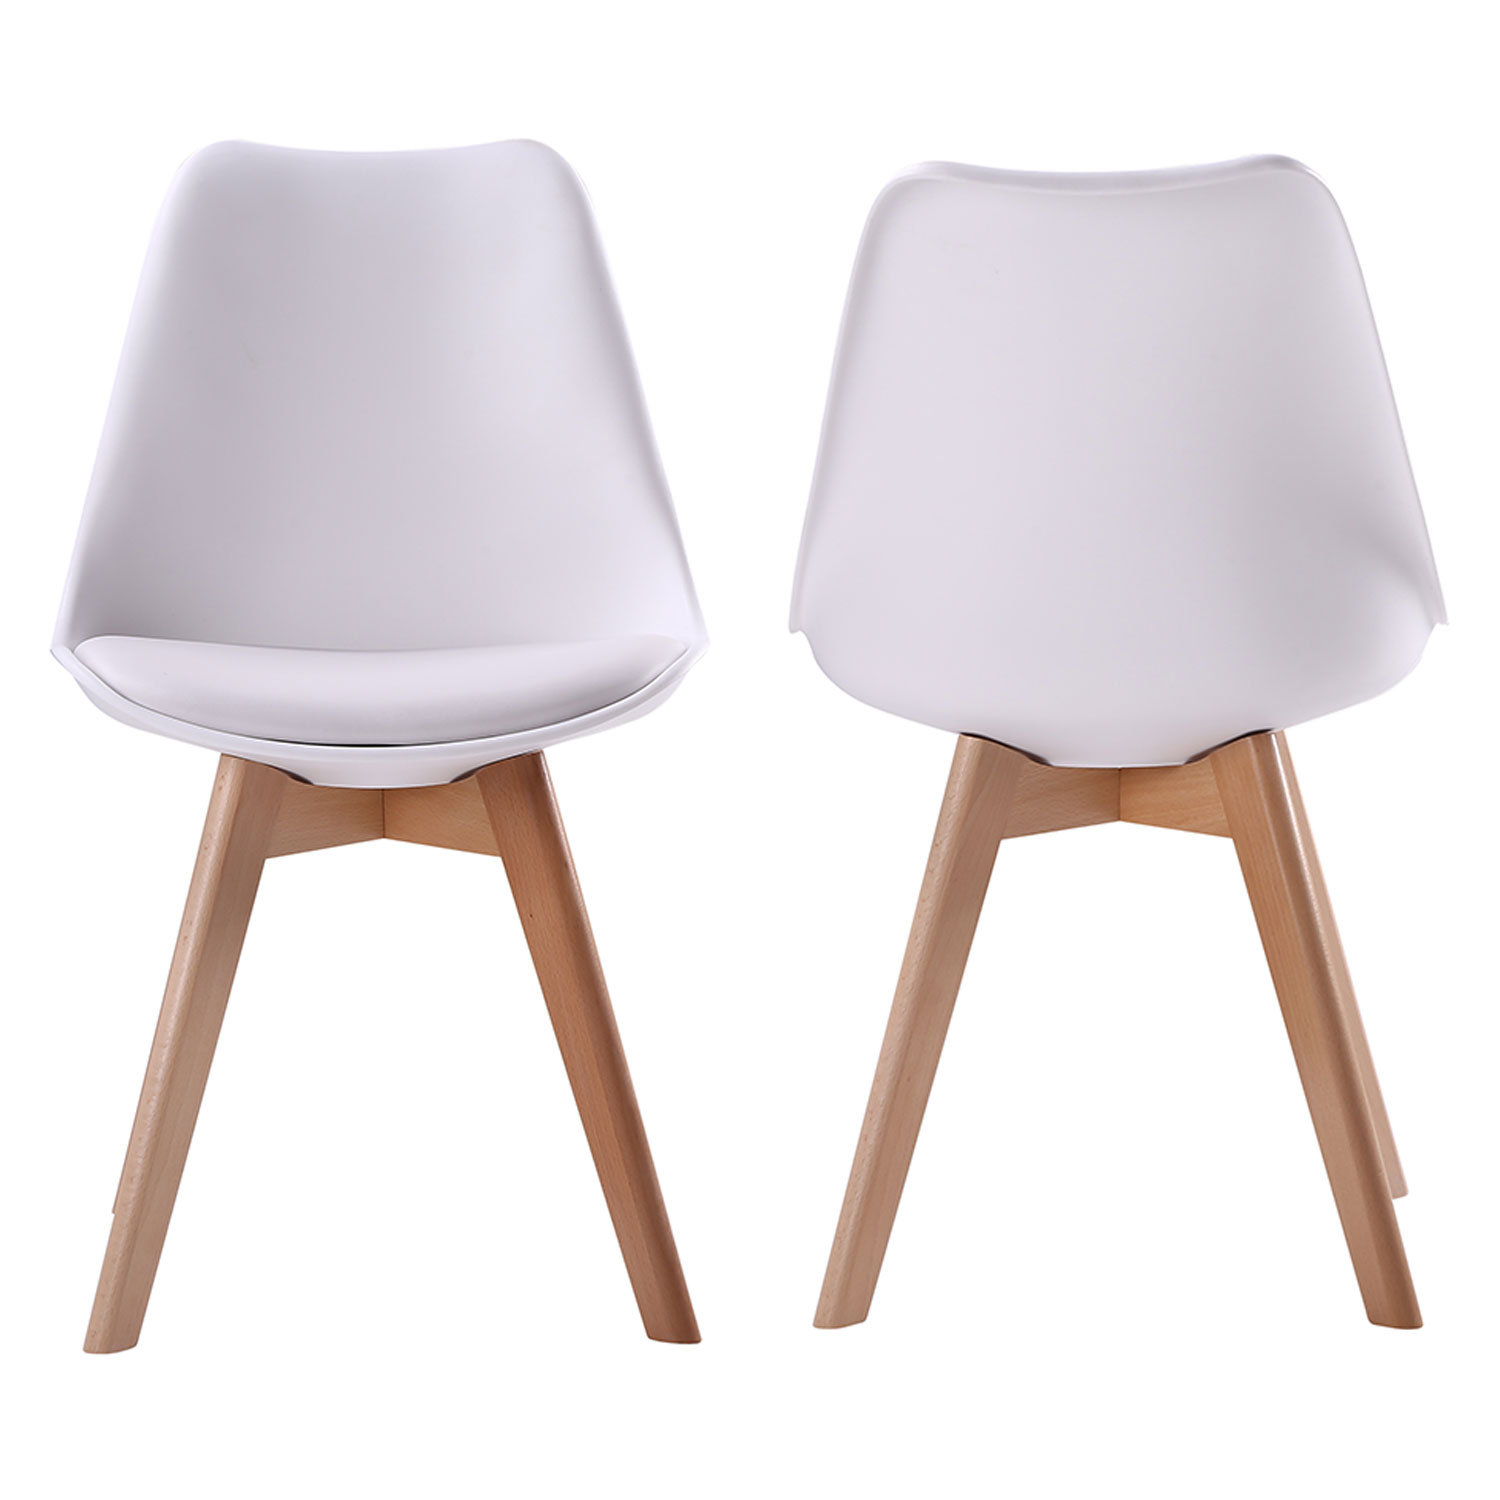 Set van 4 witte NORA Scandinavische stoelen met kussen